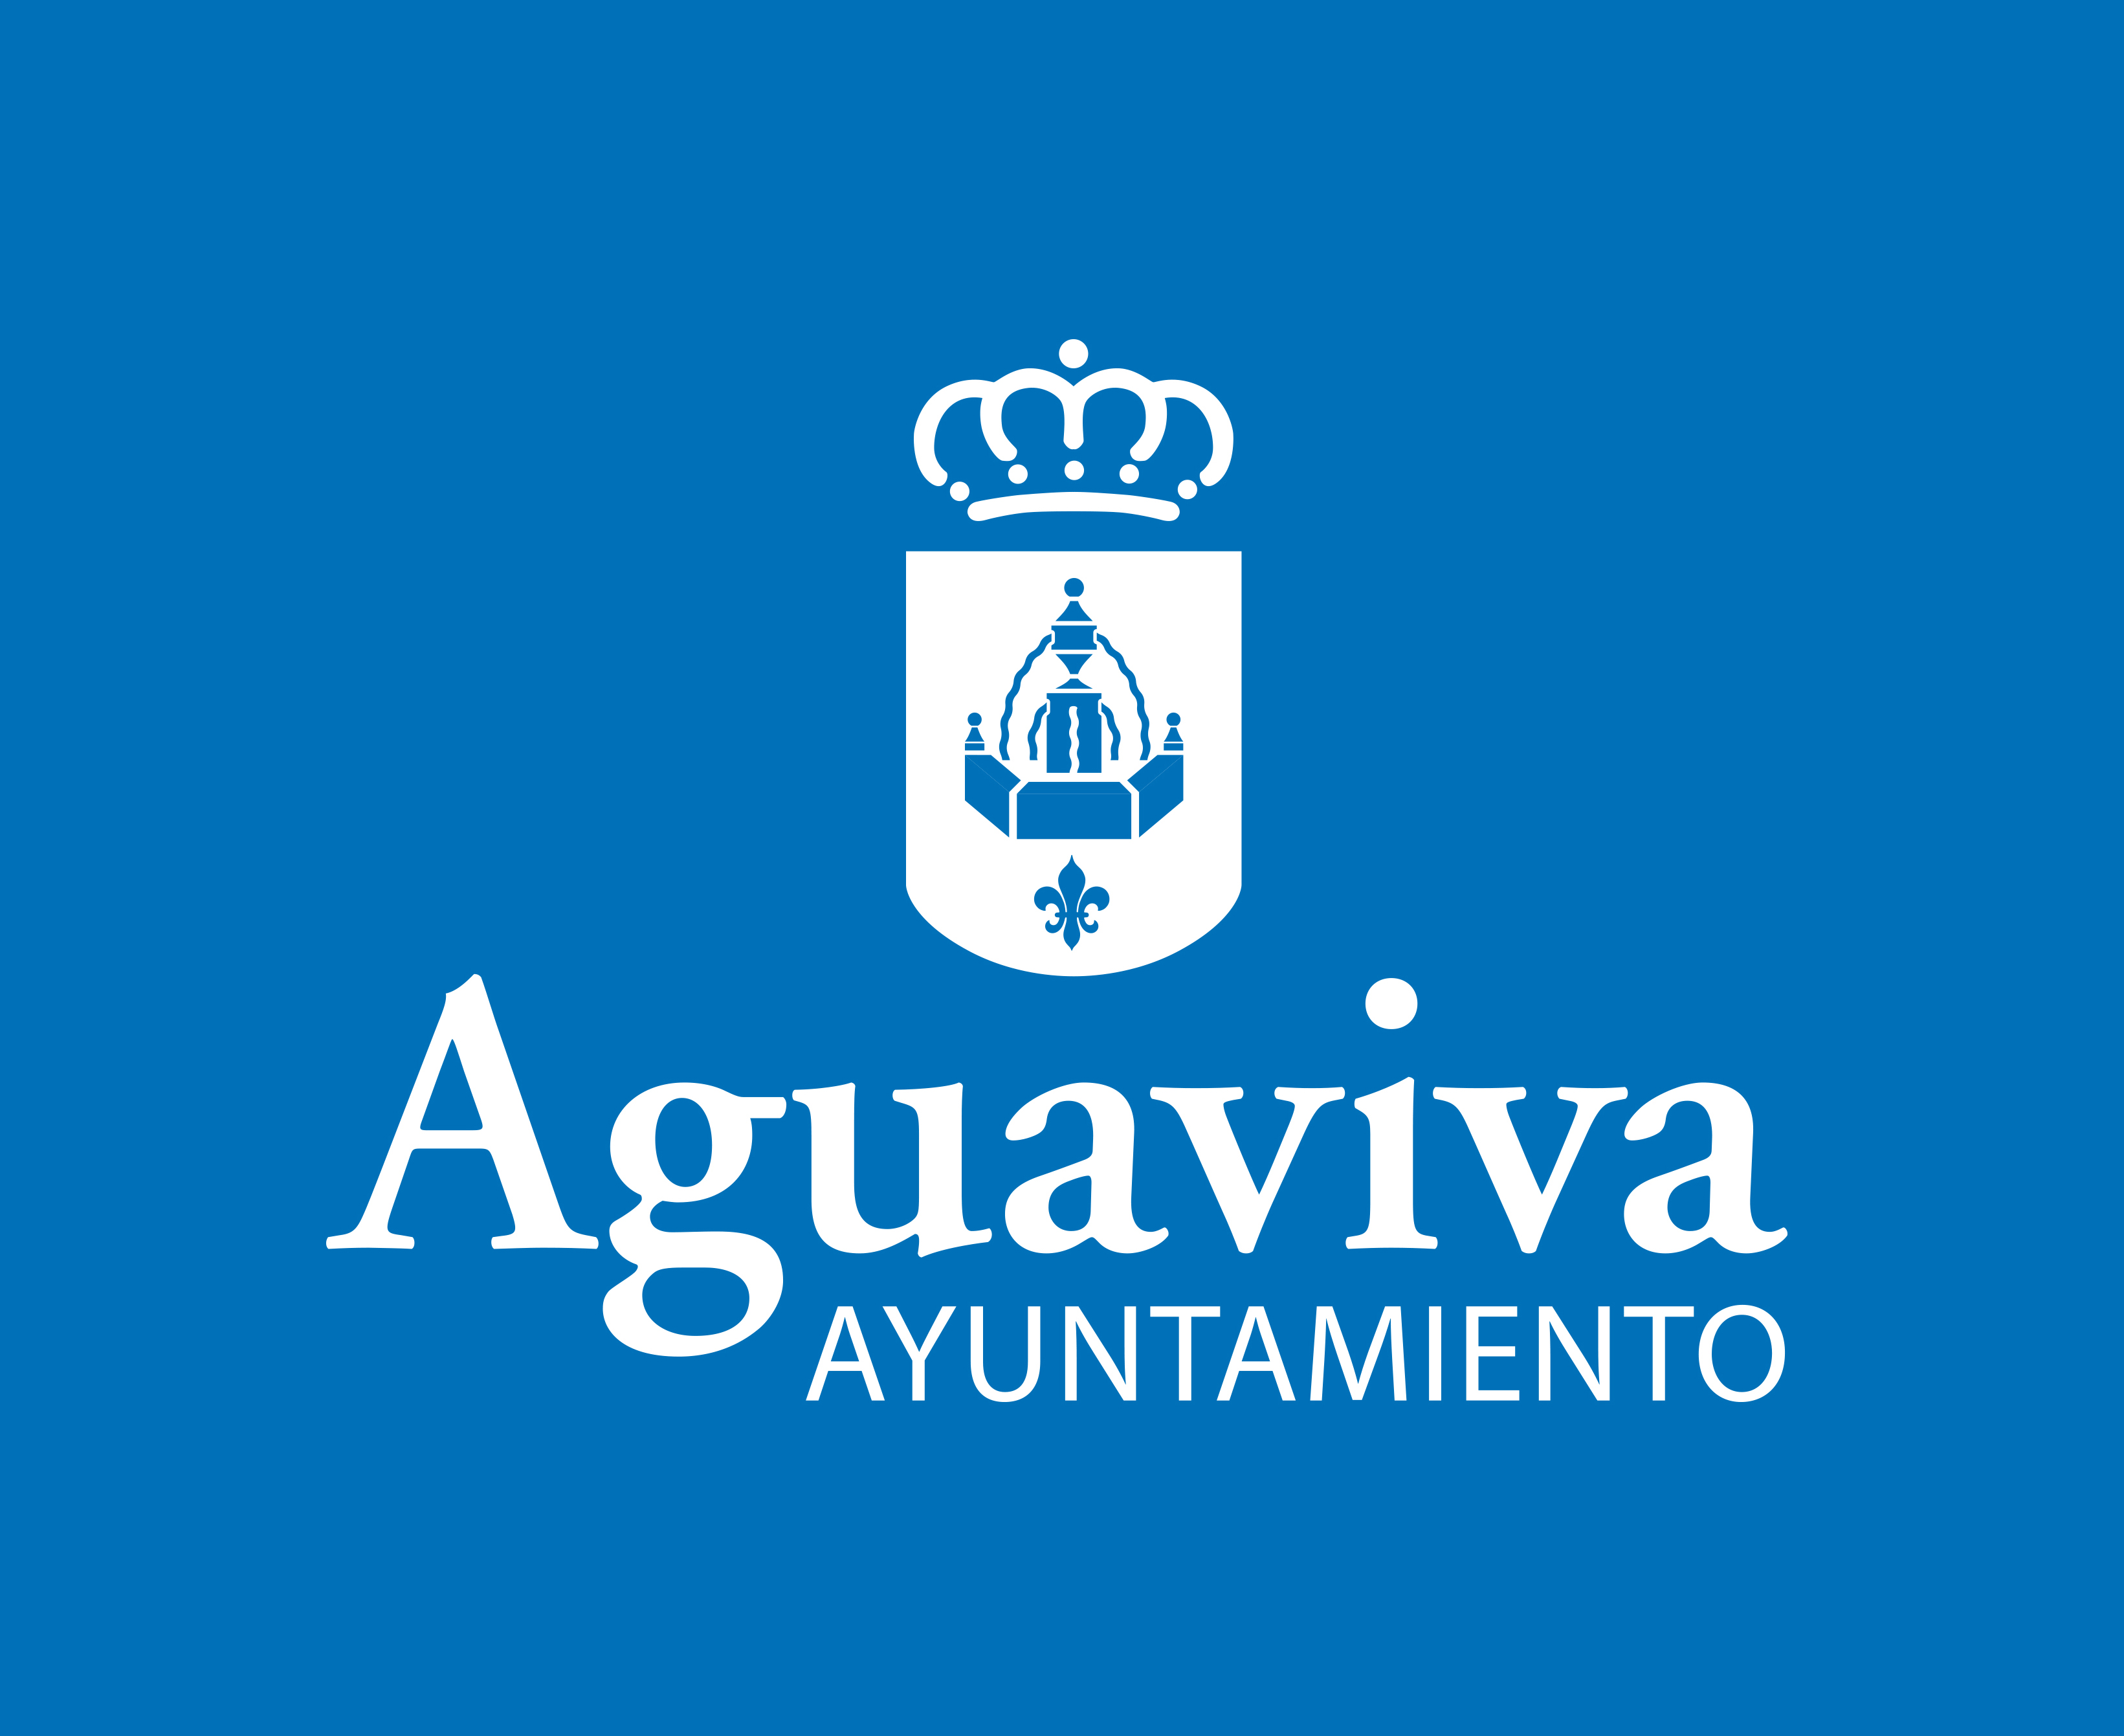 El Ayuntamiento de Aguaviva aprueba su organización para la nueva legislatura